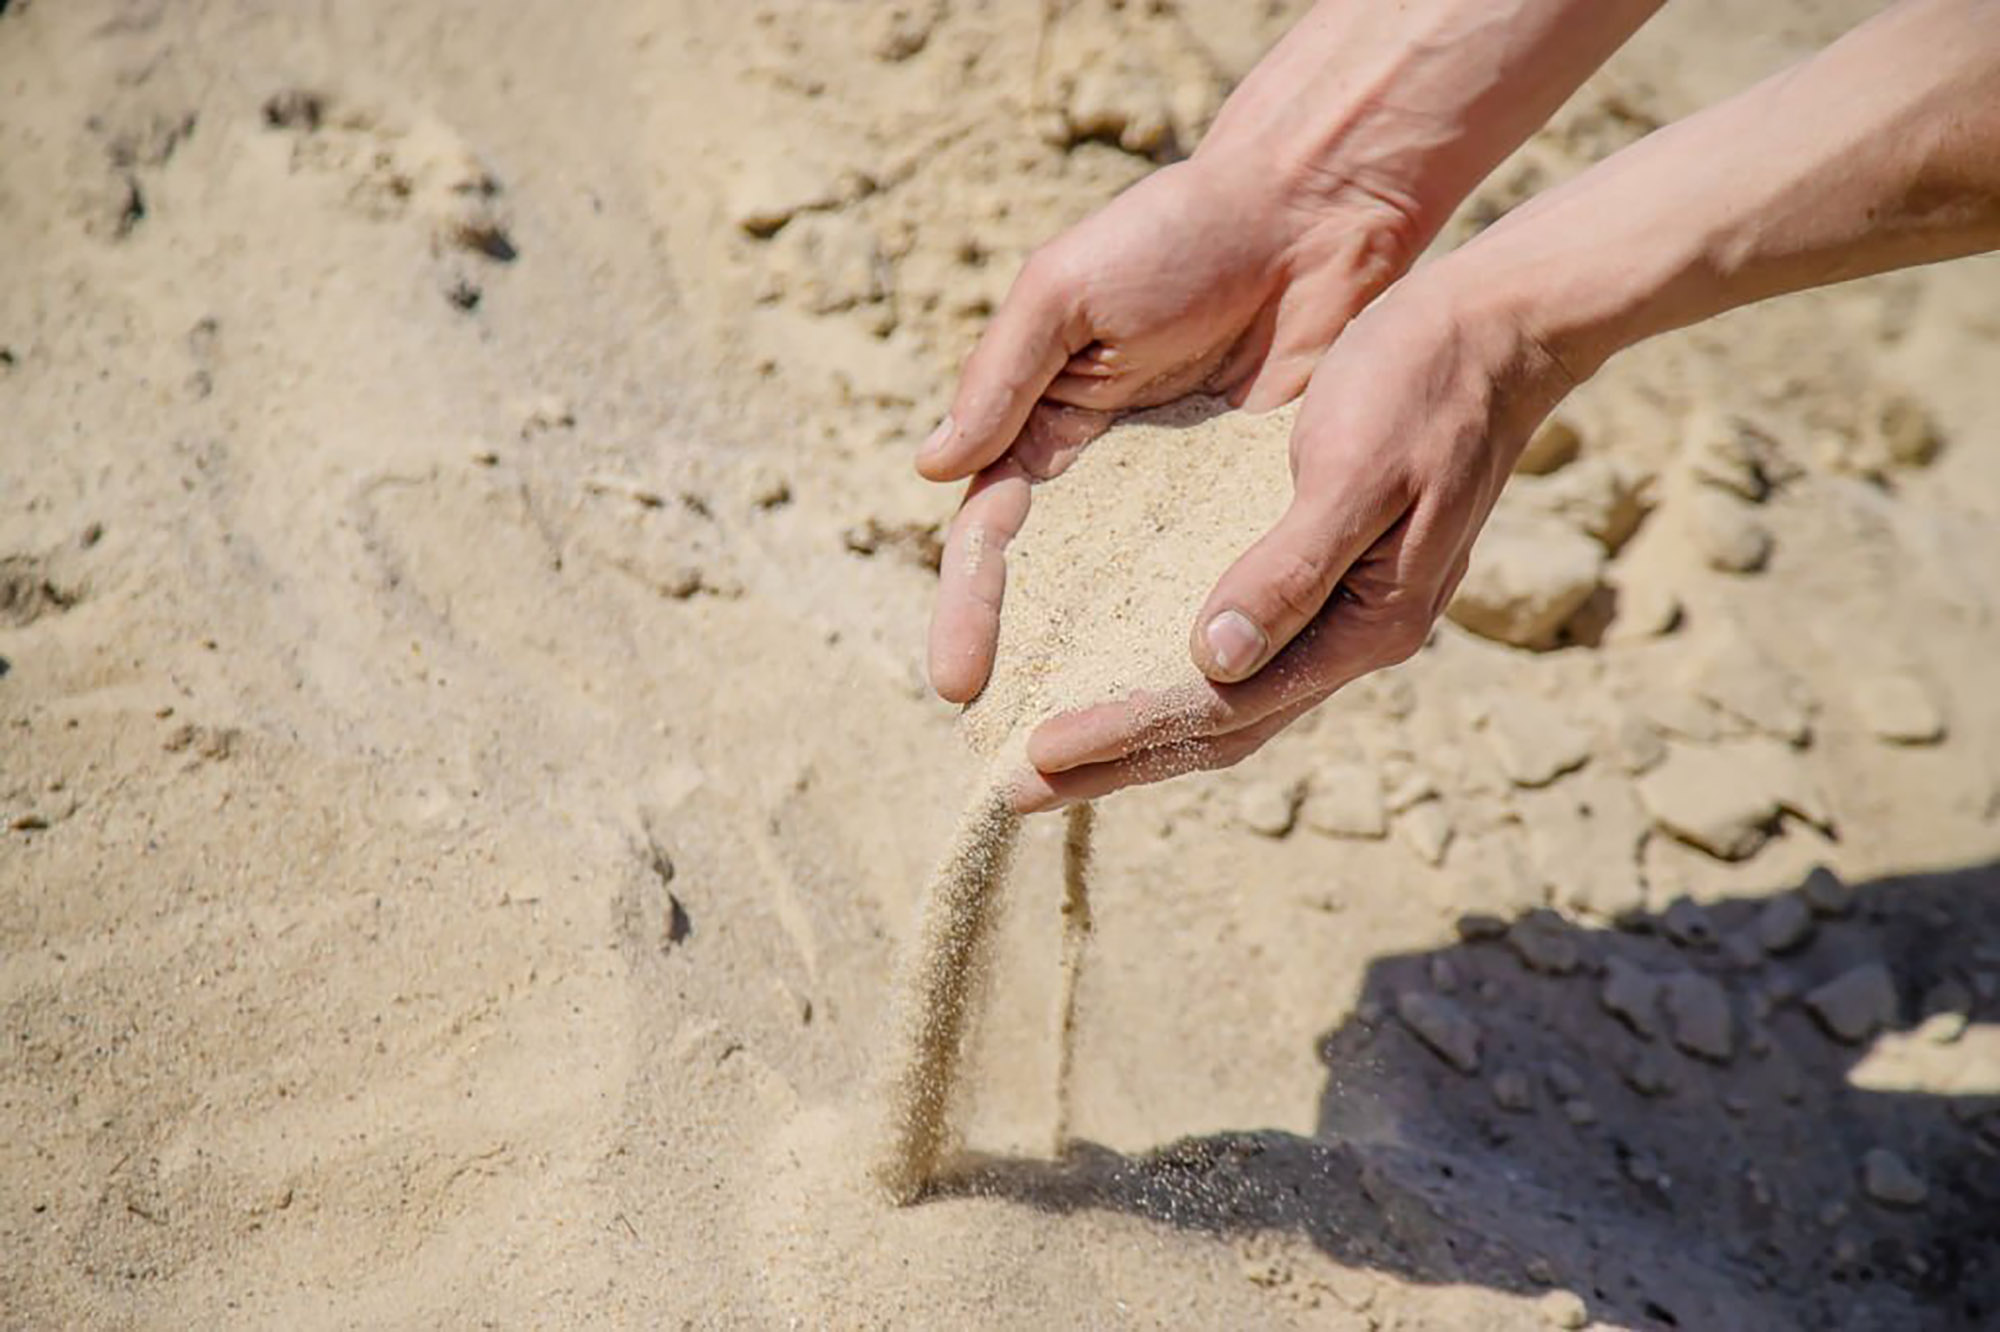 морской песок